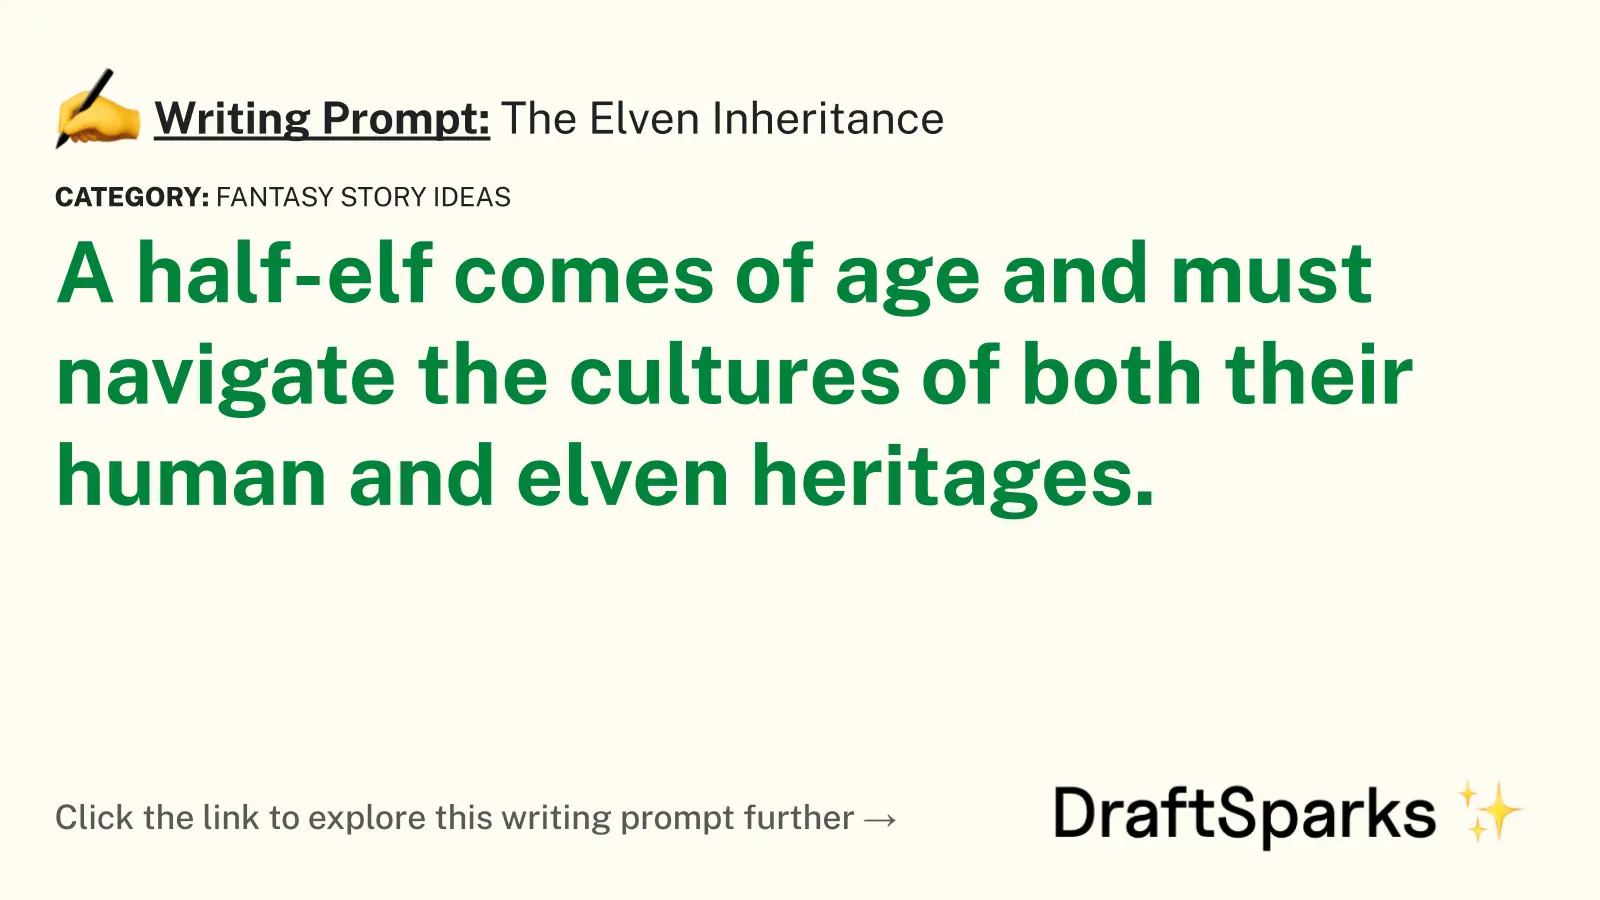 The Elven Inheritance